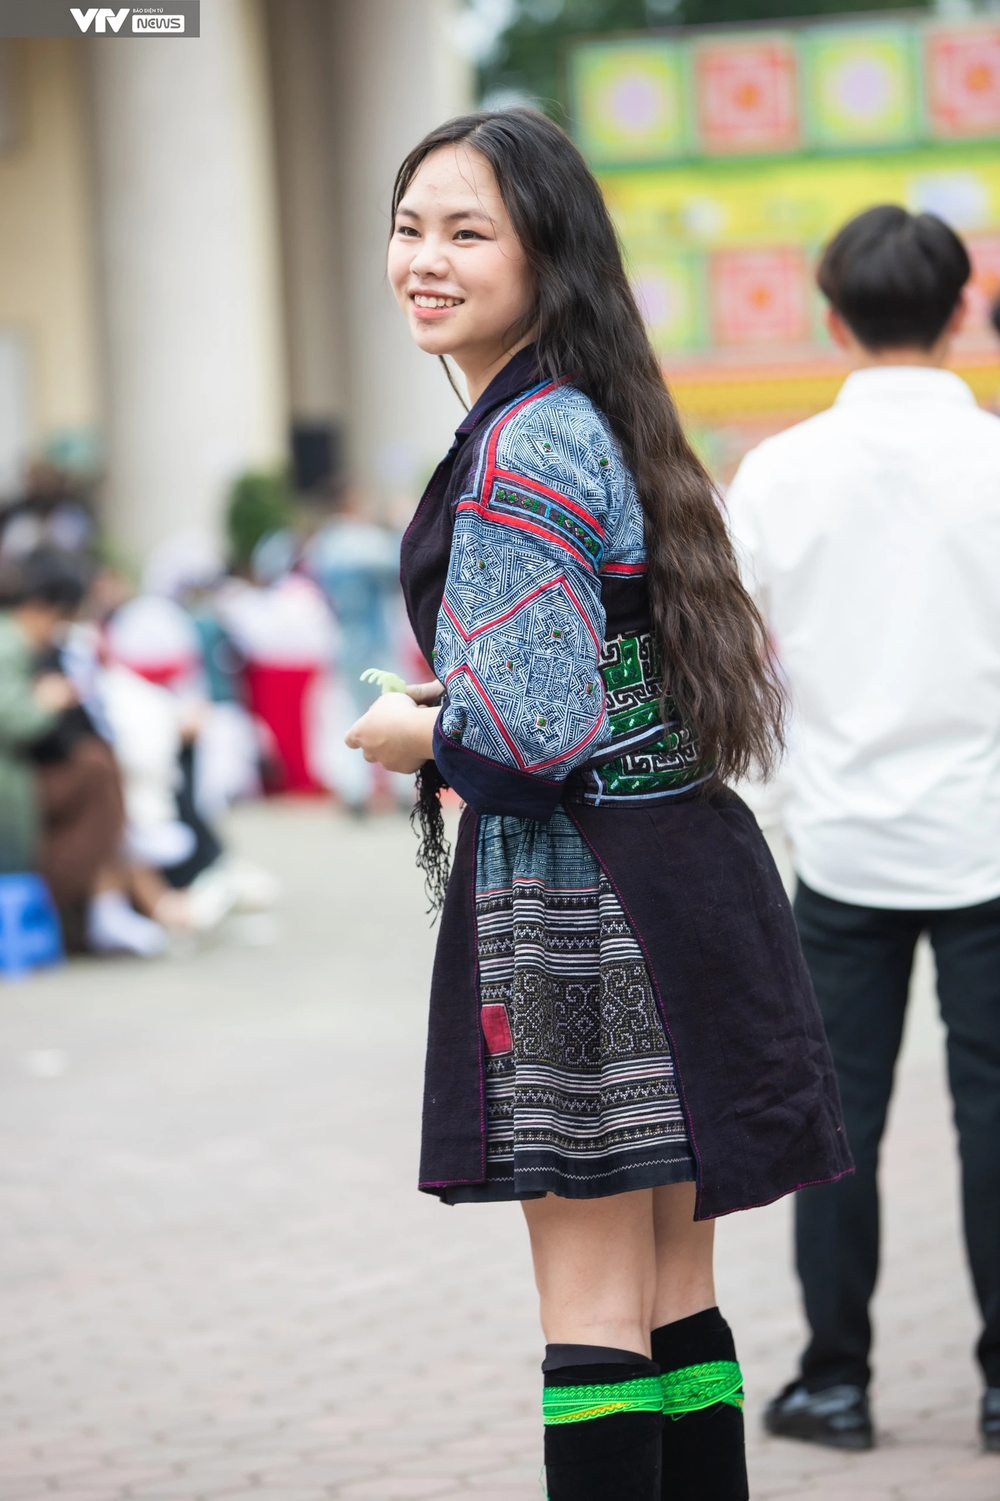 Ngắm dàn trai xinh, gái đẹp dân tộc Mông quy tụ giữa thủ đô Hà Nội - Ảnh 5.